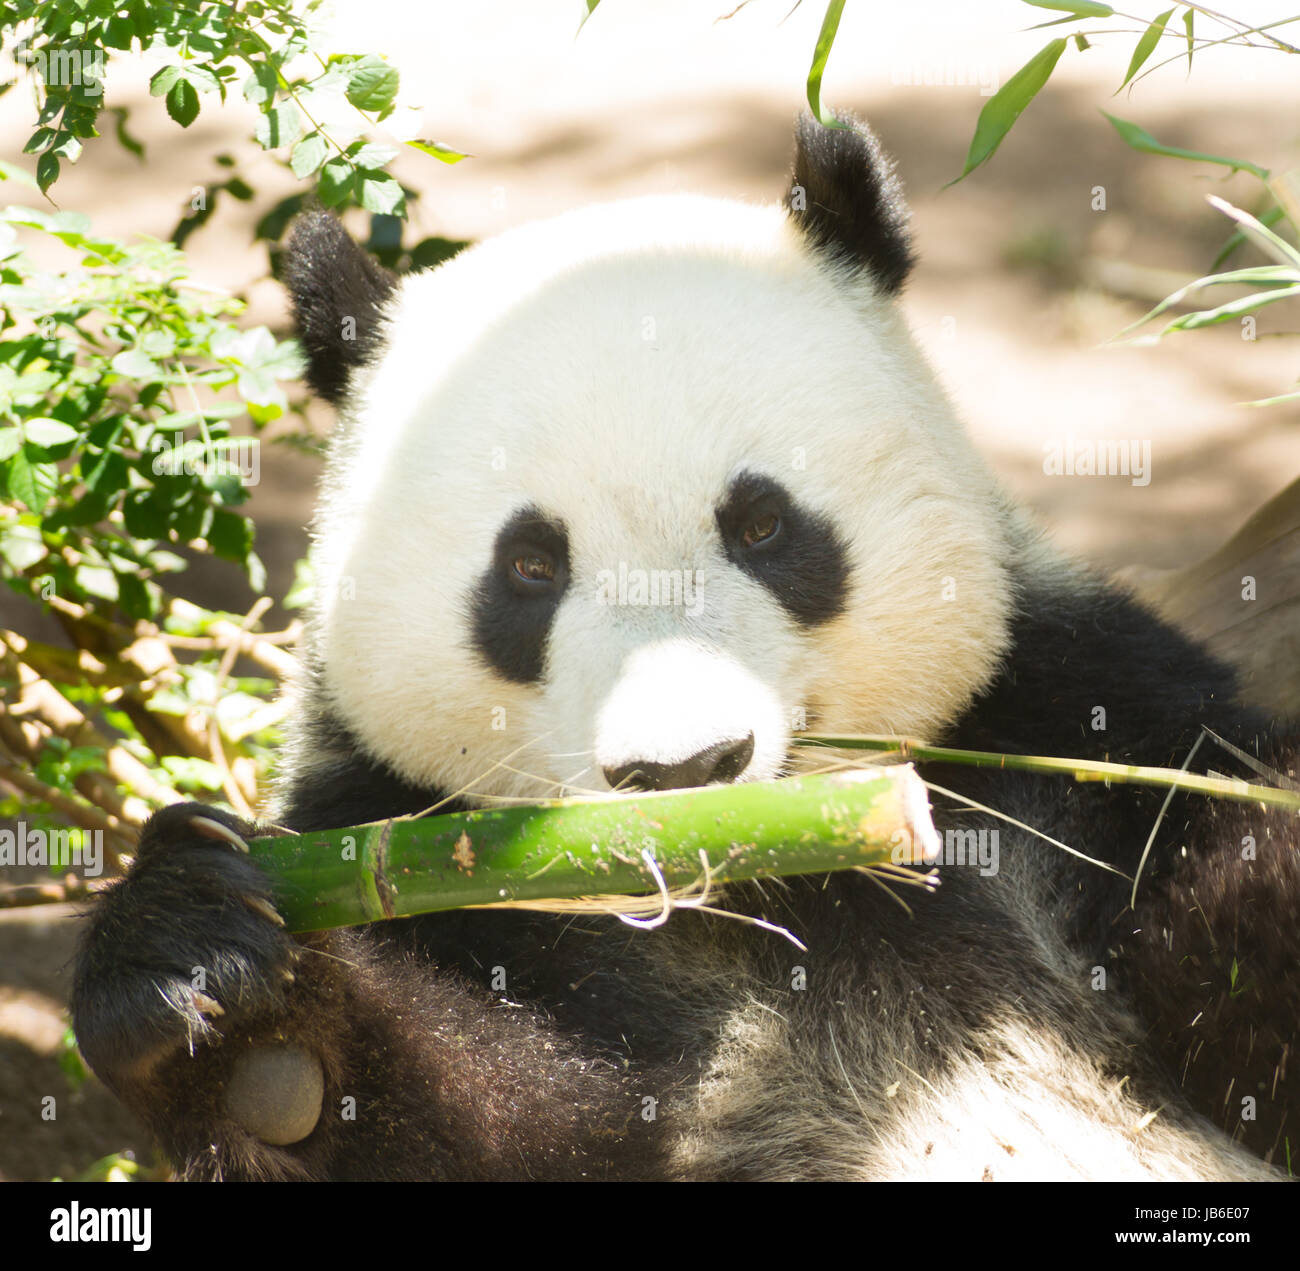 Vom Aussterben bedrohte Pandabären Essen Bambus Stiel Stockfoto